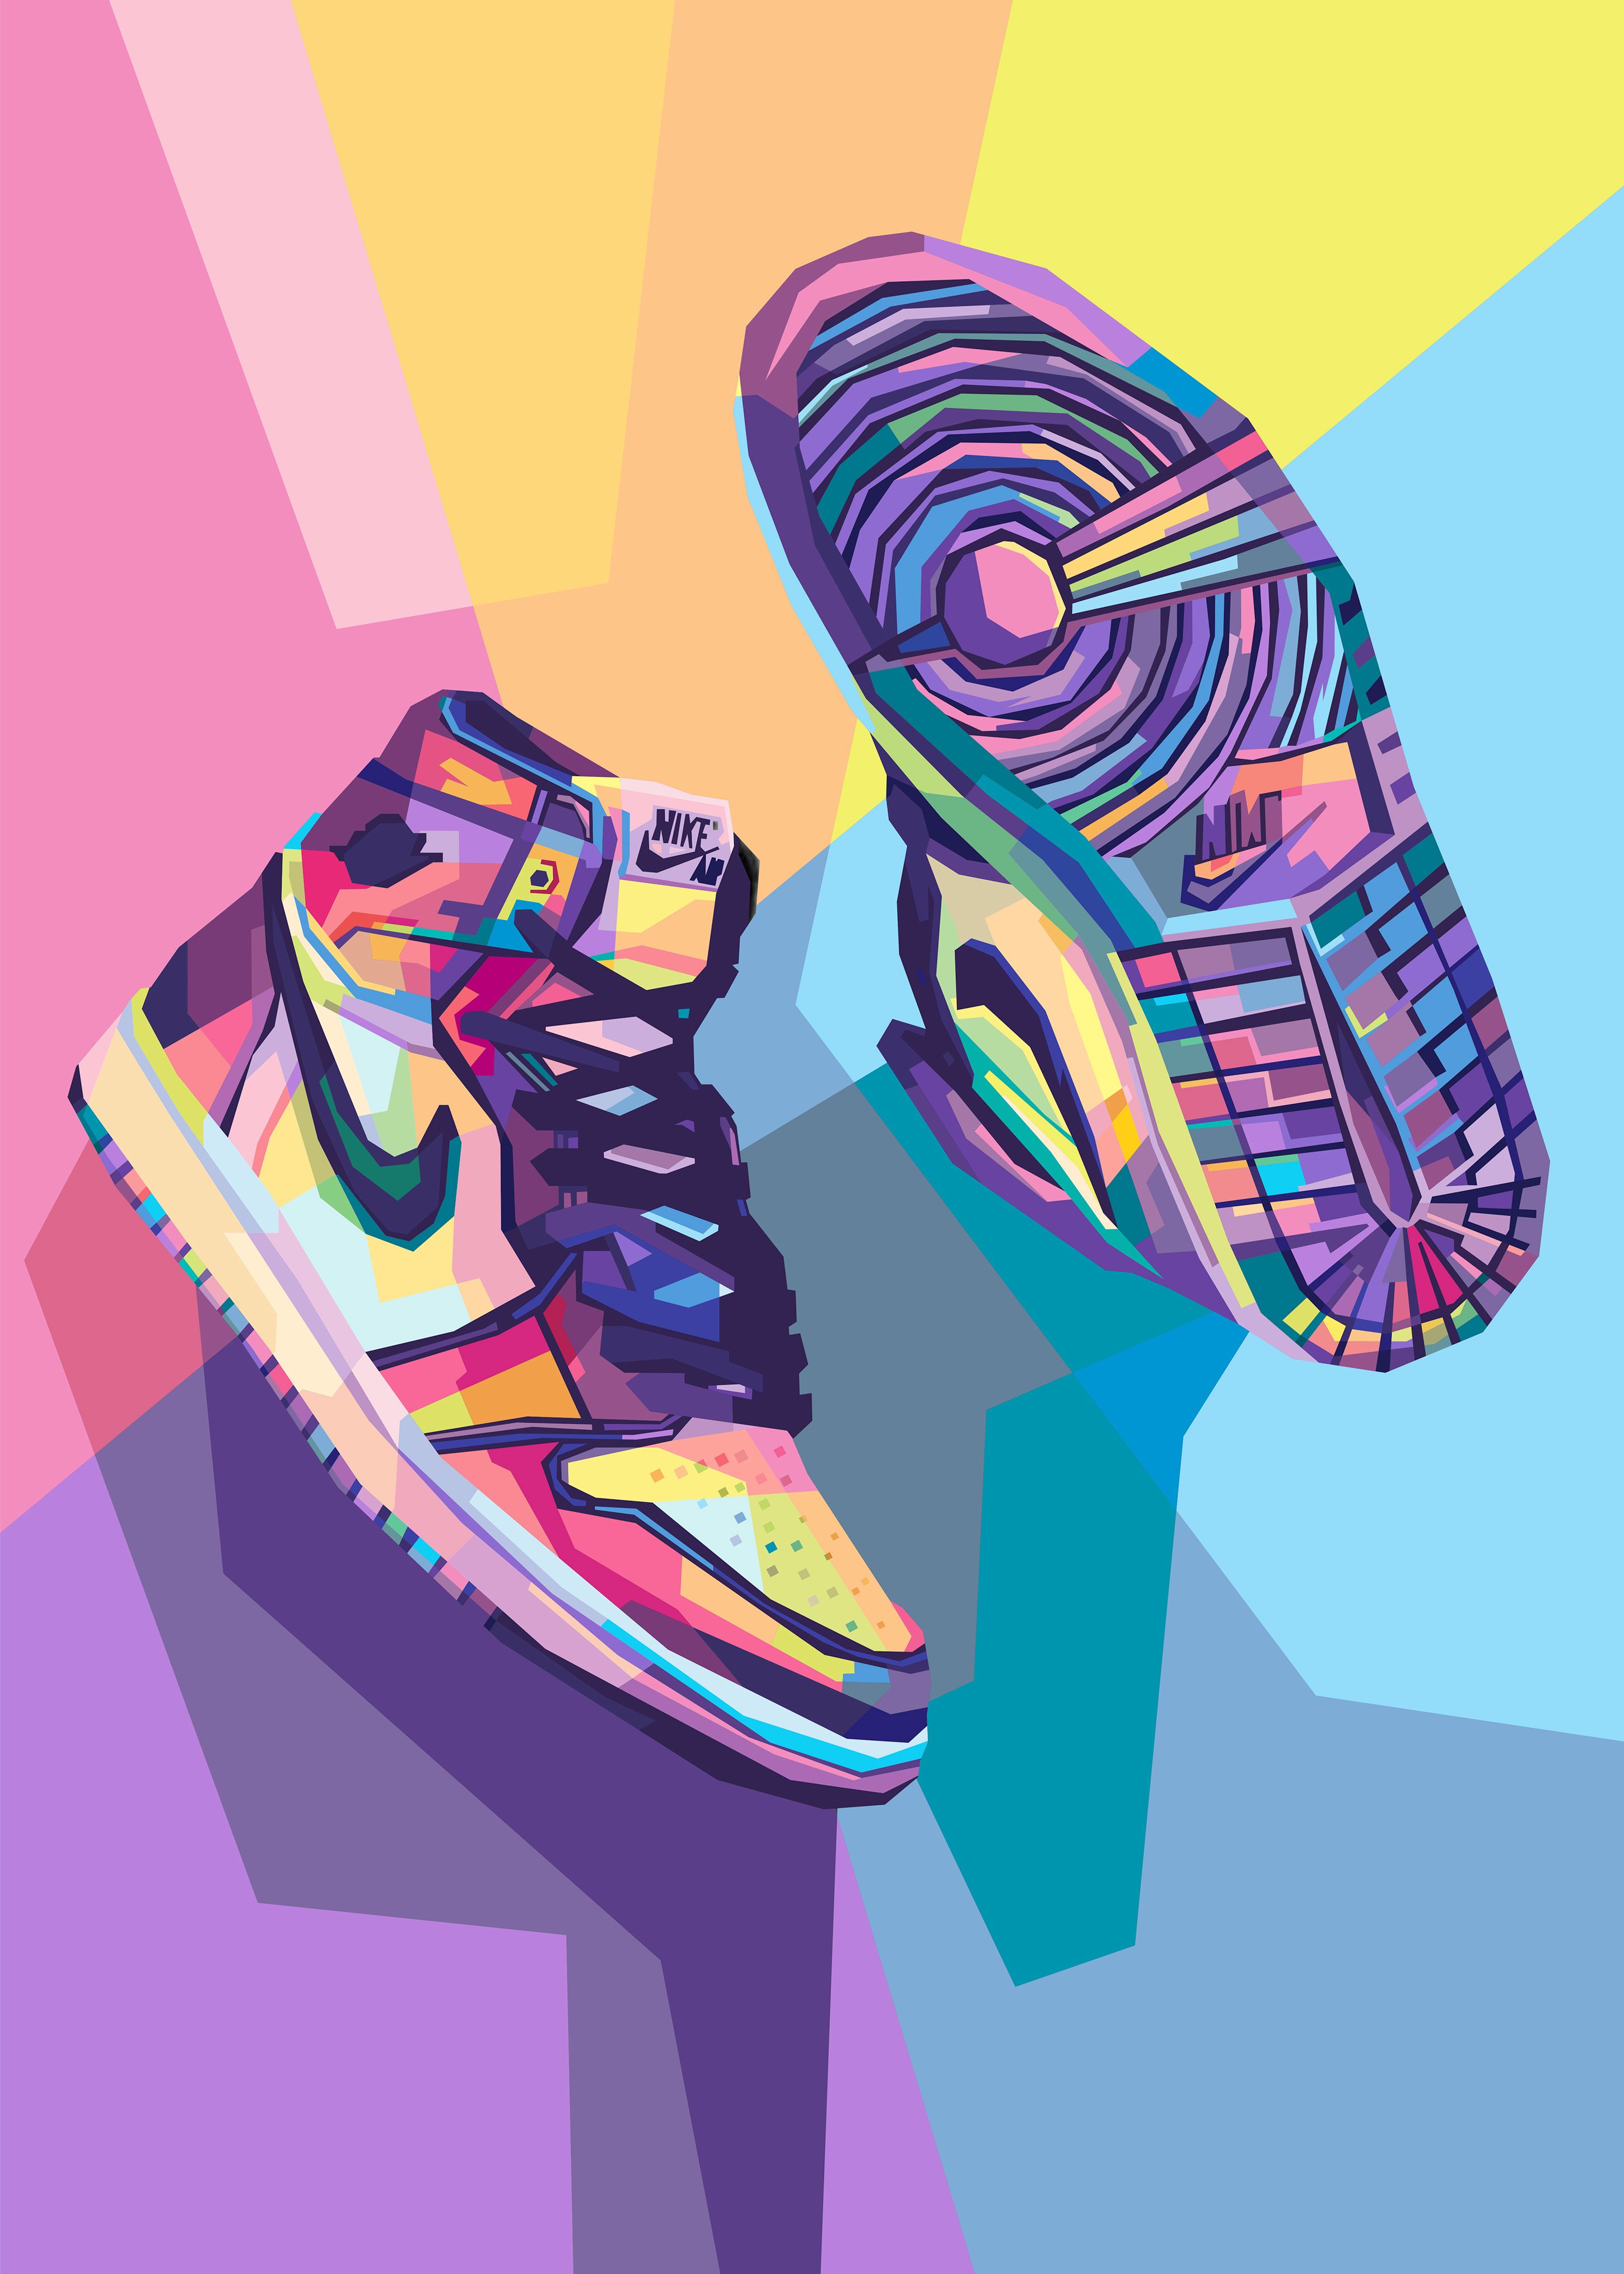 Nike Air Jordan Art. Sneakers wallpaper, Nike art, Art wallpaper